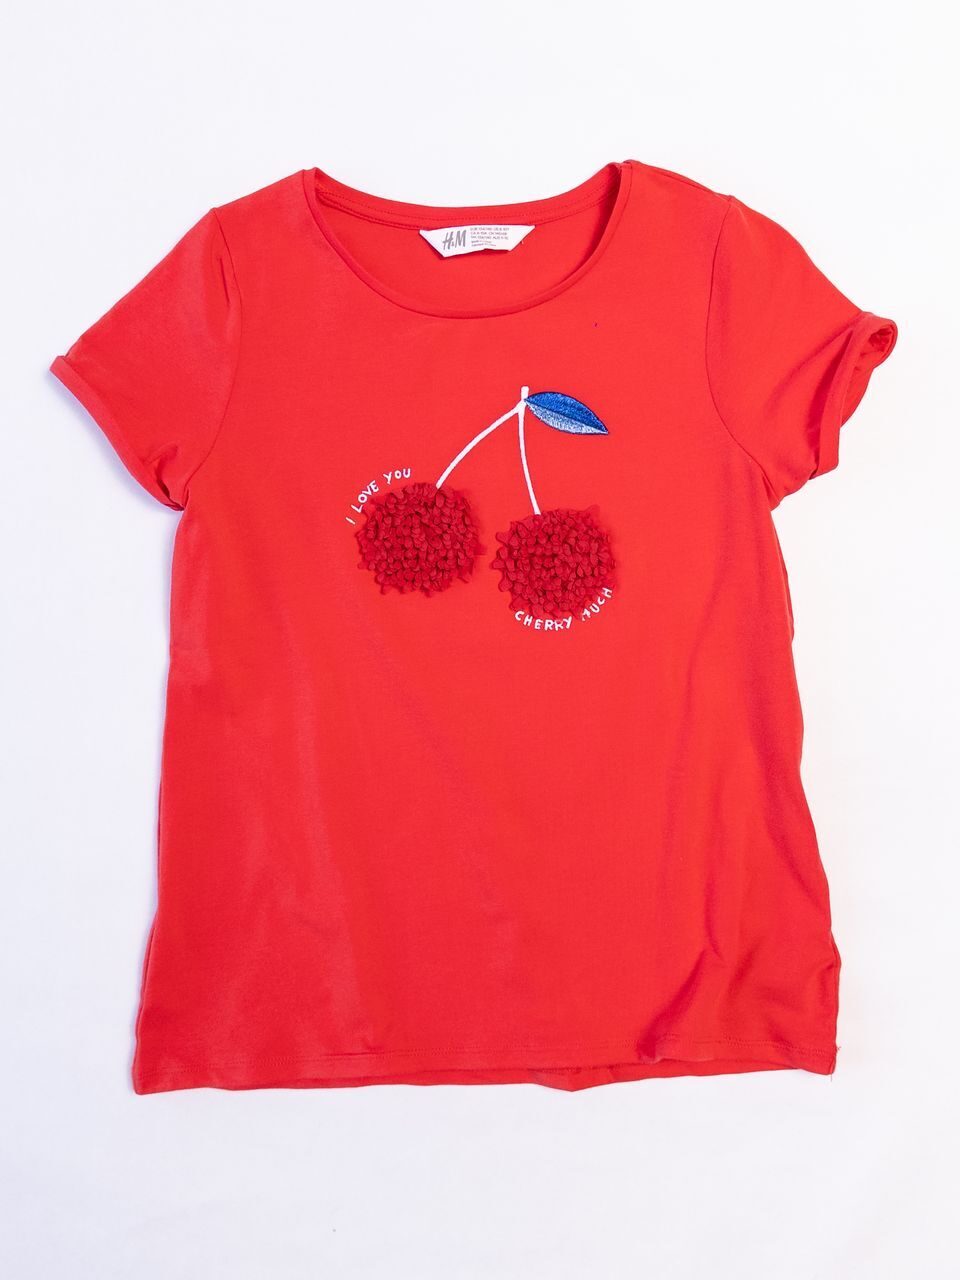 Футболка из мягкого хлопкового трикотажа цвет красный аппликация Вишенки для девочки на рост  140 см H&M